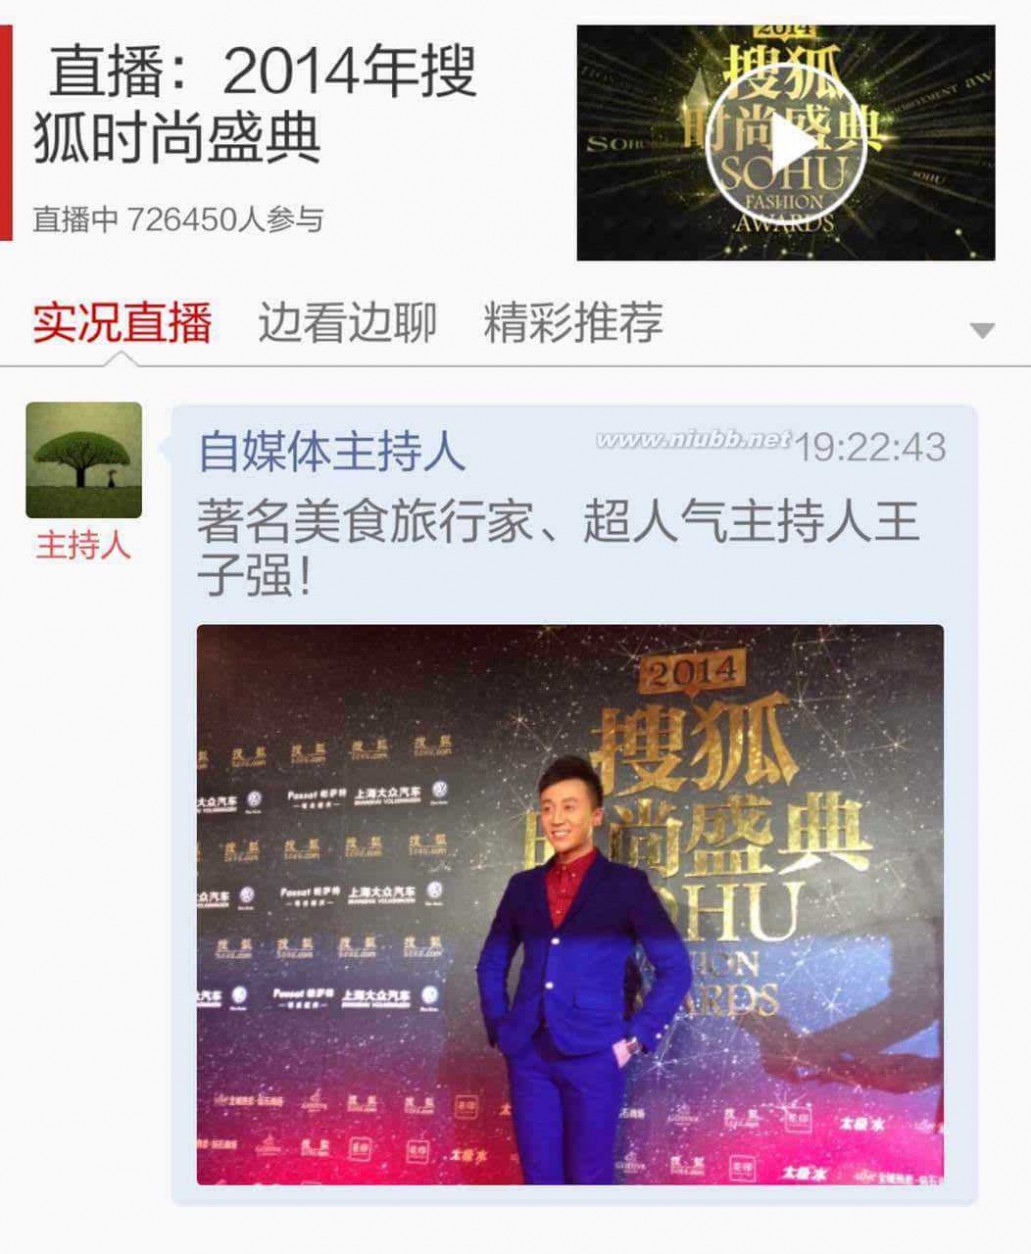 2014搜狐时尚盛典 2014搜狐时尚盛典落幕 自媒体科技跨界成热点